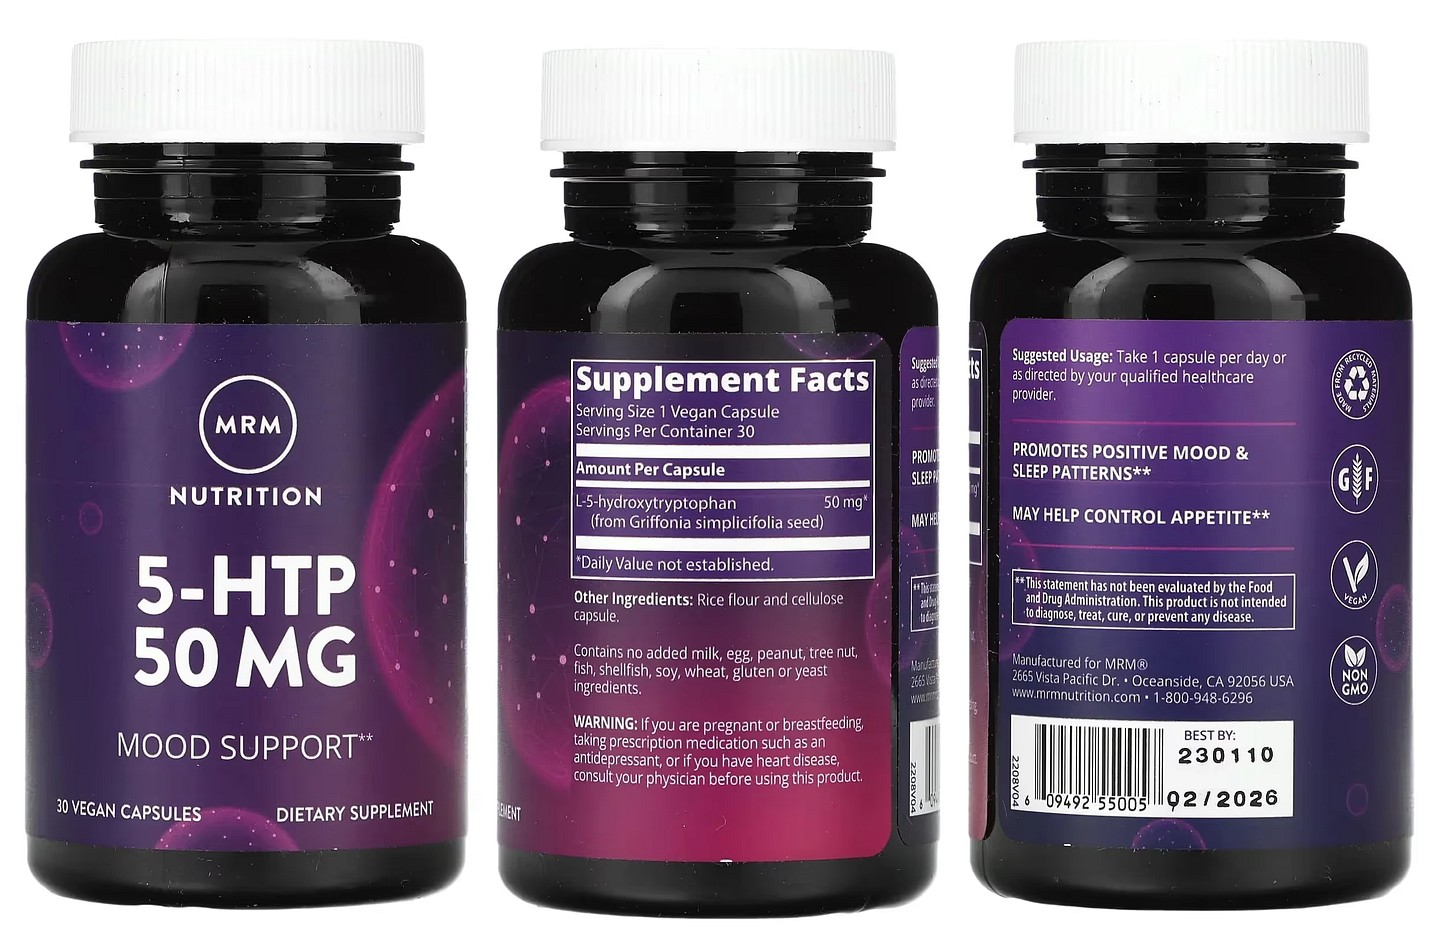 MRM Nutrition, 5-HTP packaging